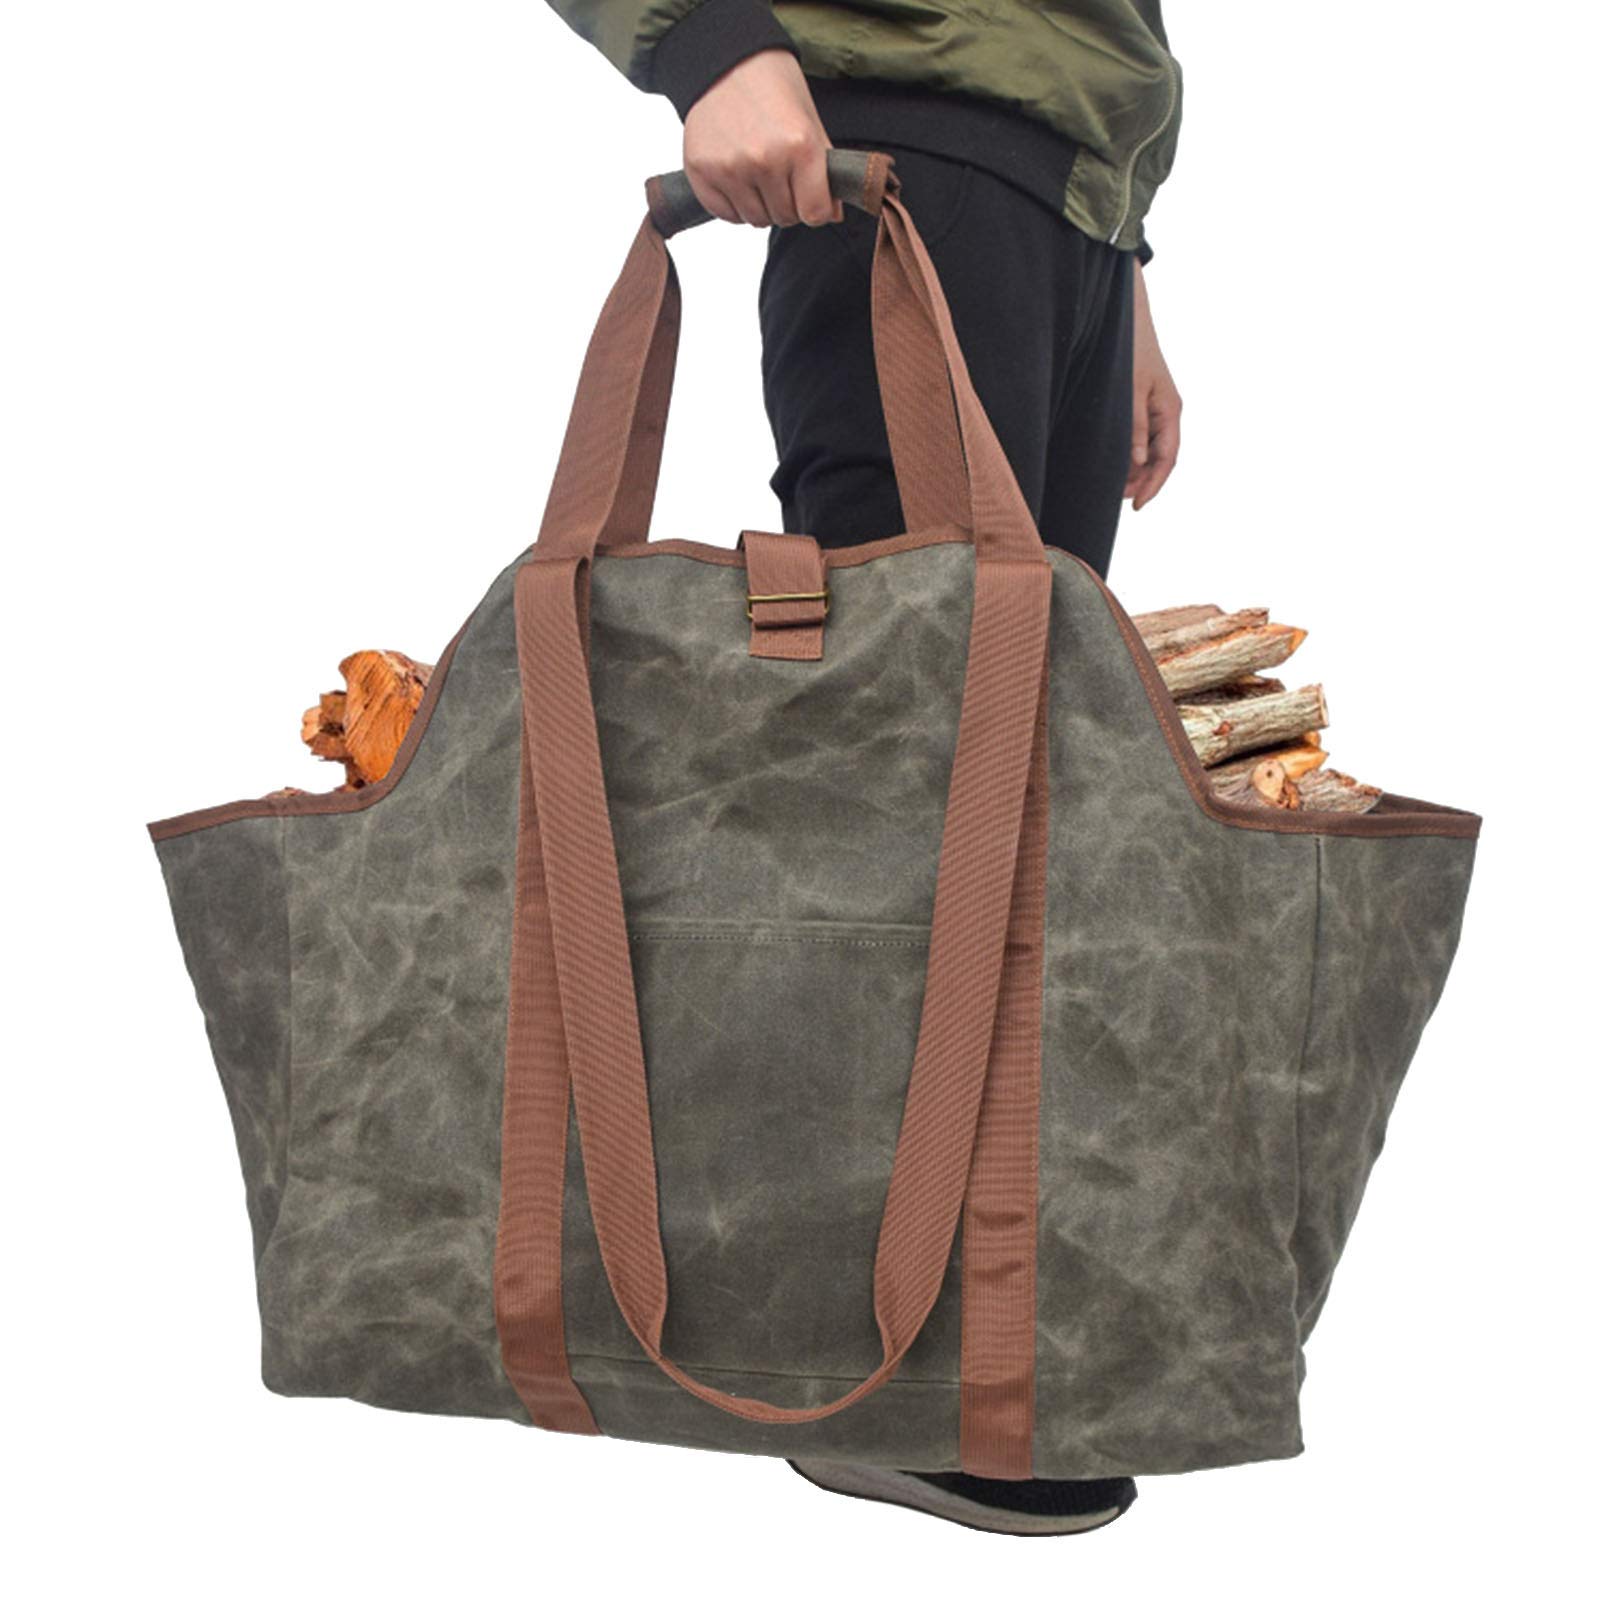 送料無料GUANGMING - Waxed Canvas Log Carrier Tote Bag Outdoor Large Capacity Firewood Storage Bag with Handles and Shoul